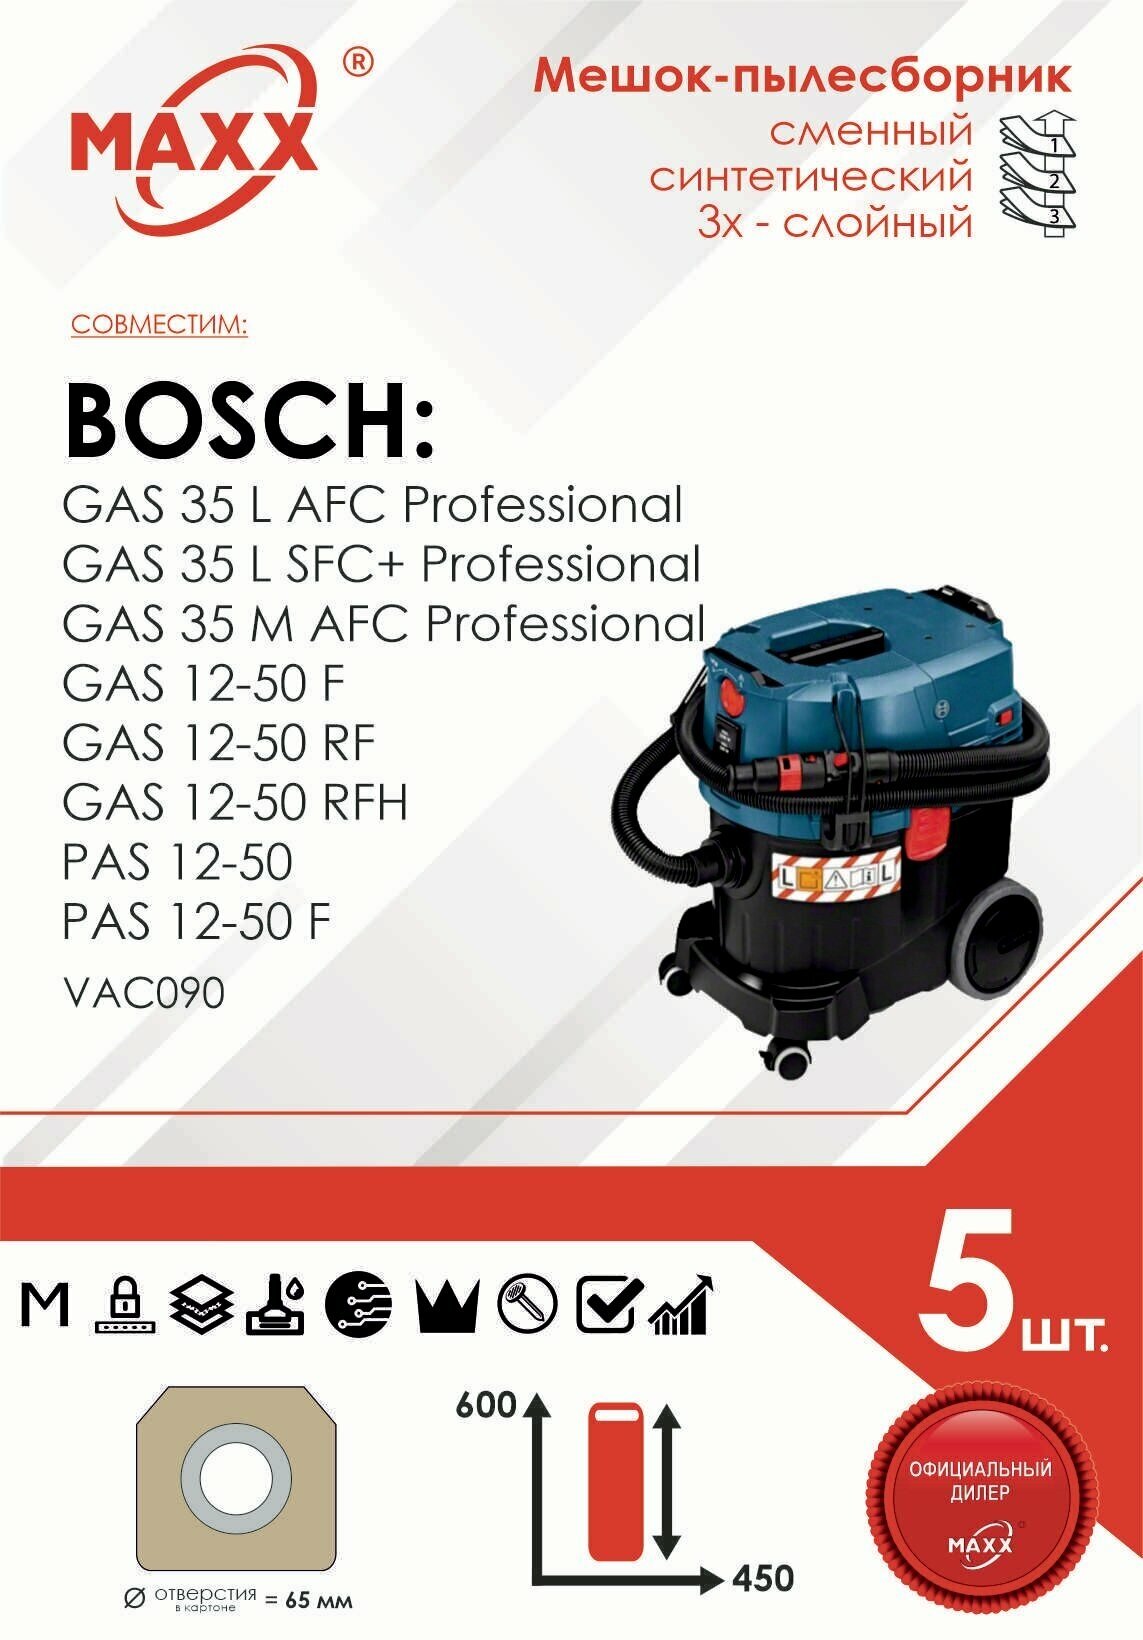 Мешок - пылесборник 5 шт. для пылесоса Bosch GAS 35 L AFC Professional 06019C3000